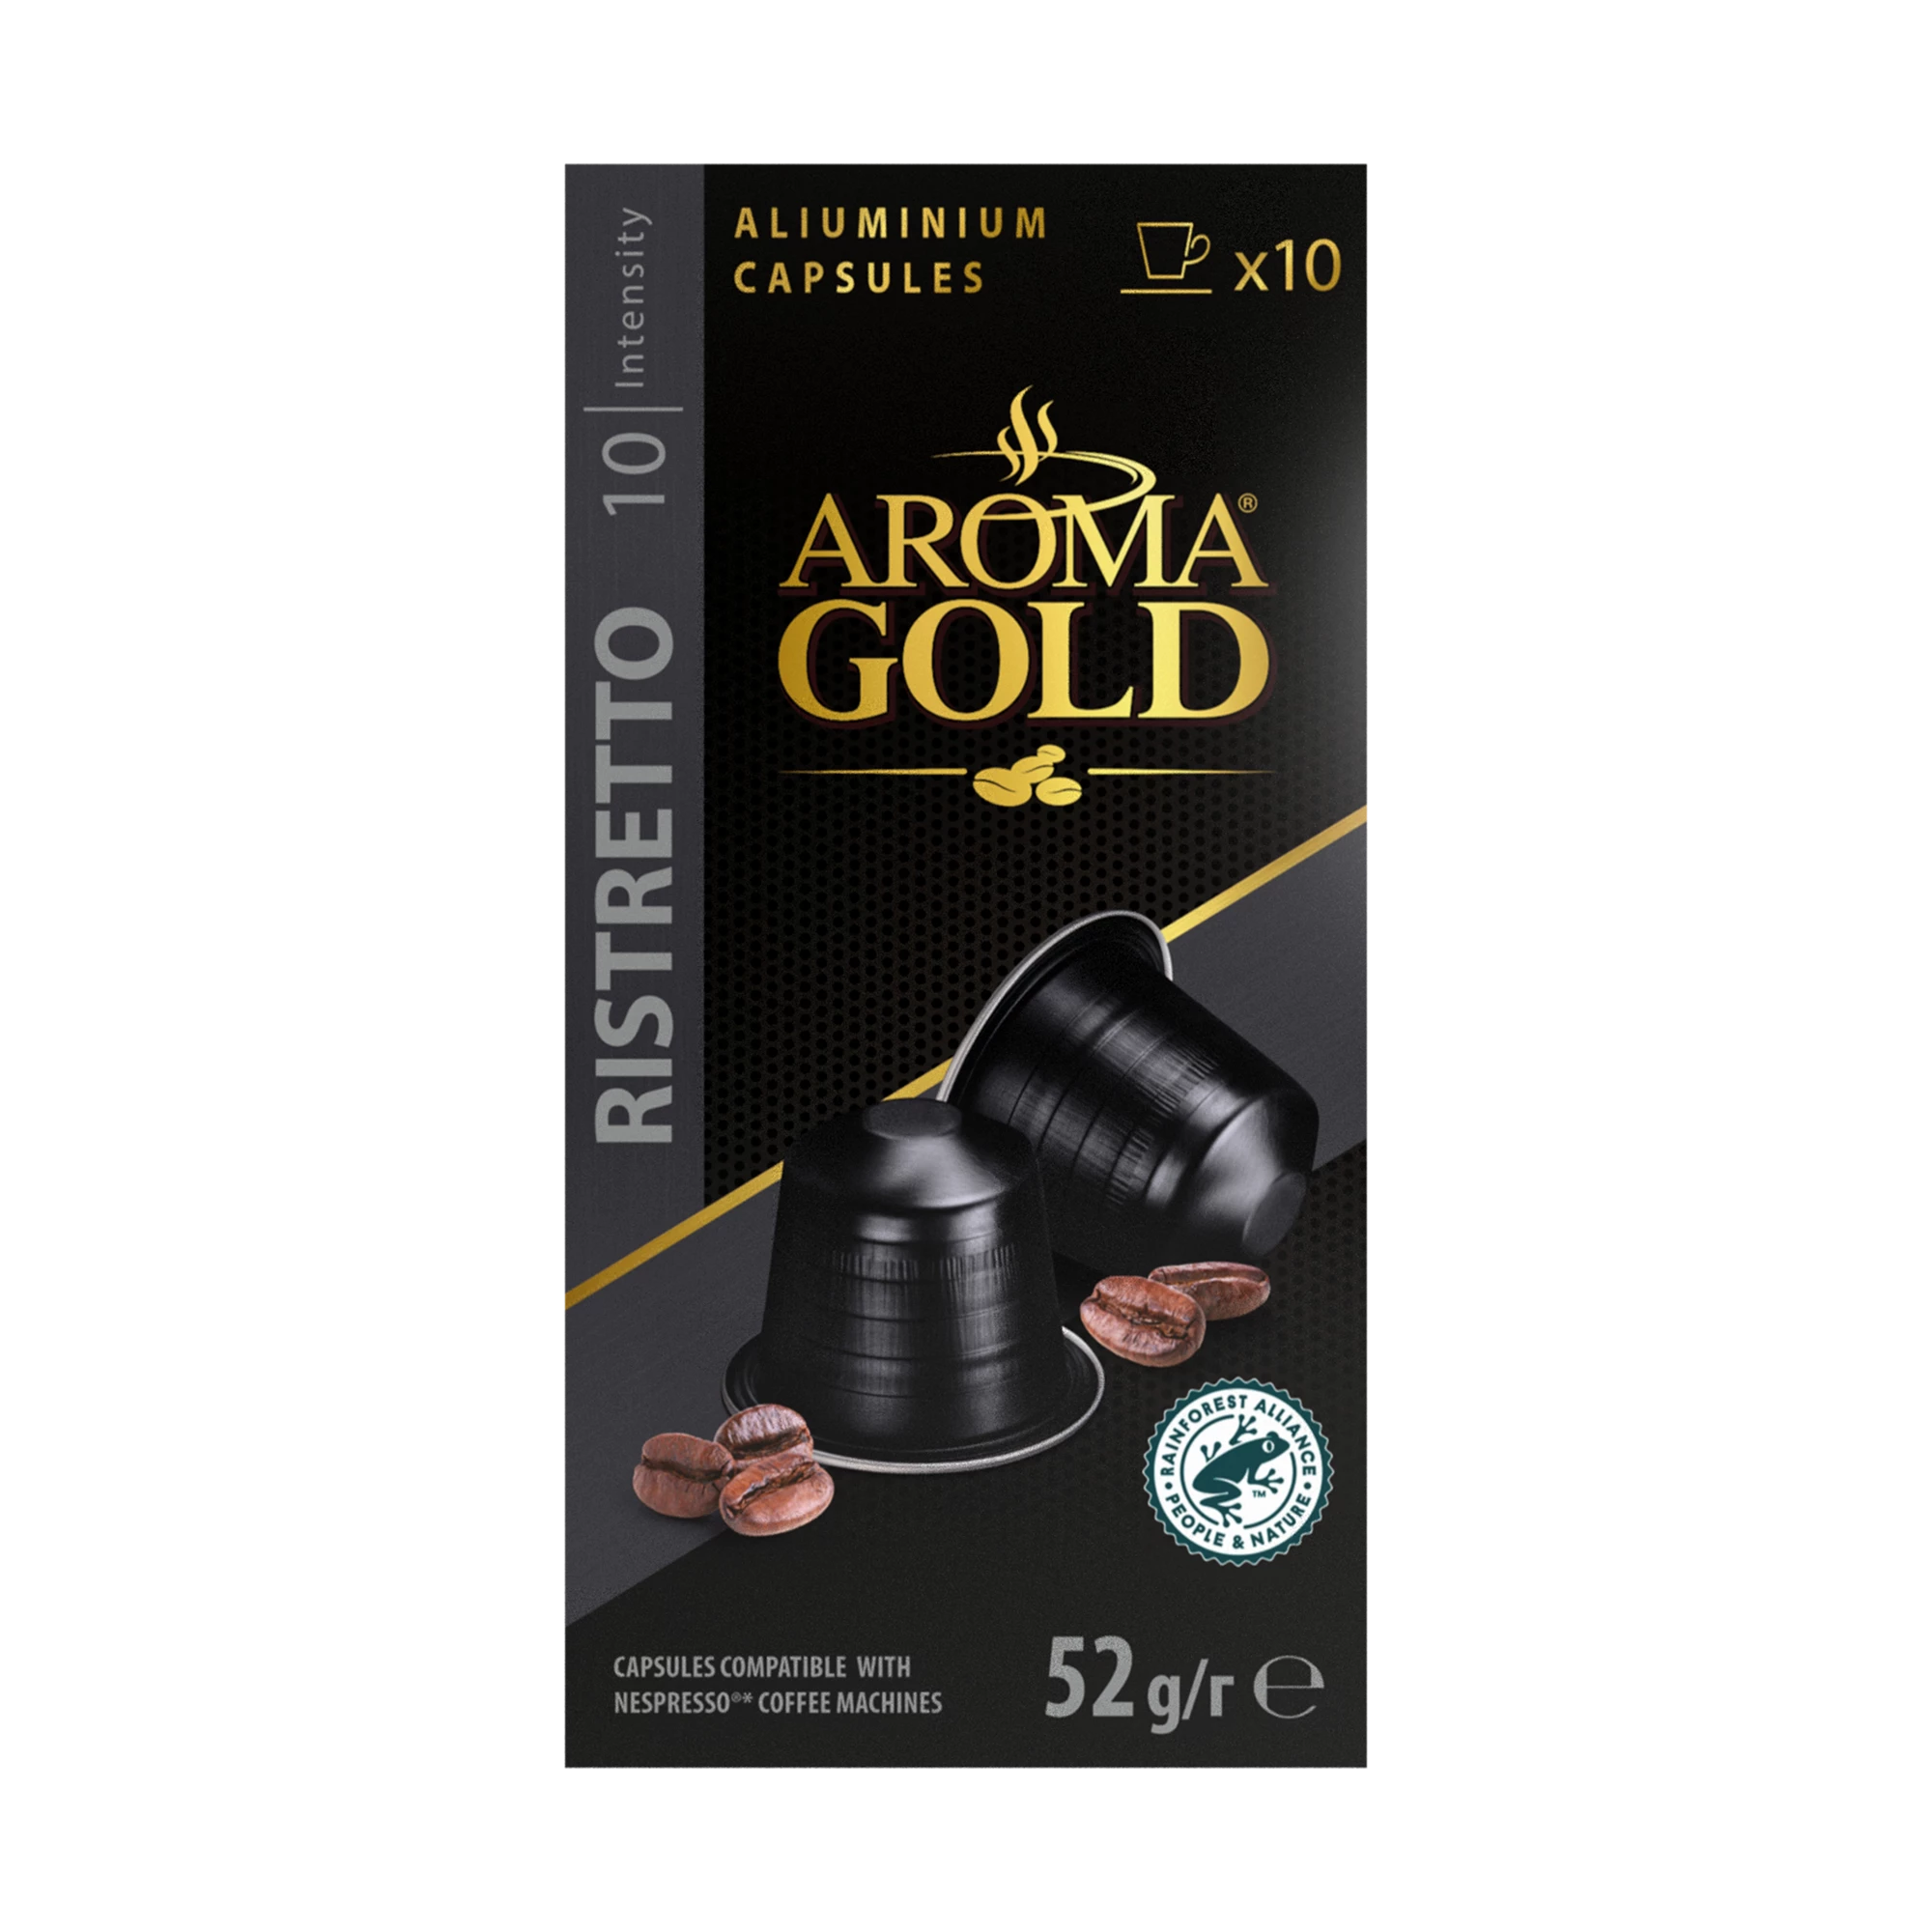 Café  Ristretto Compatible Nespresso X 10. (intensity 10) - Aroma Gold